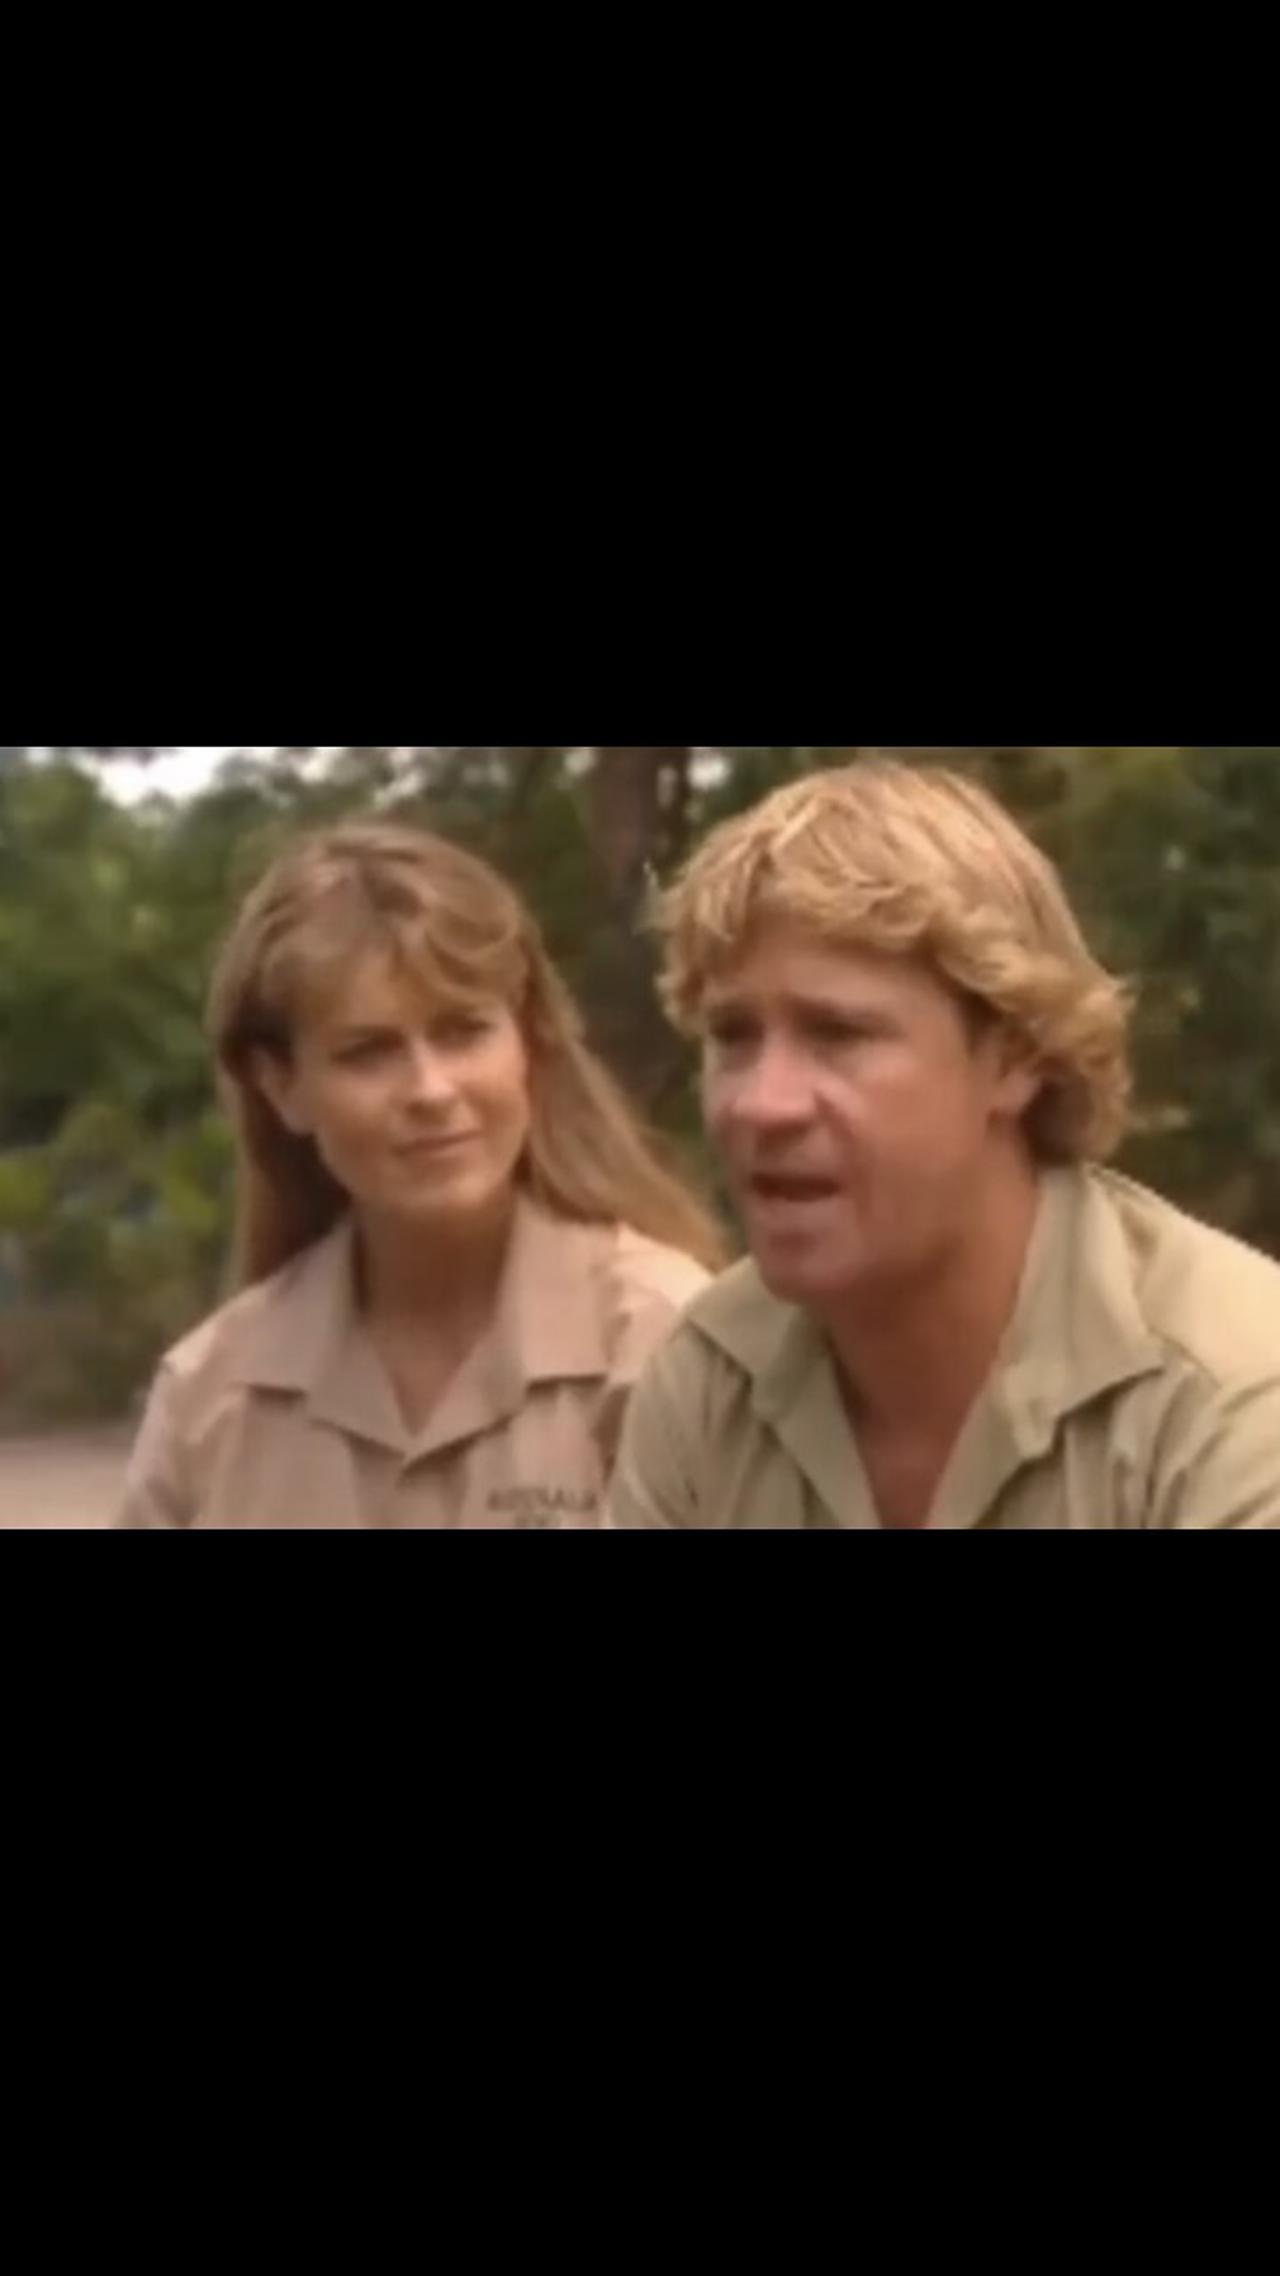 Steve Irwin is a Legend